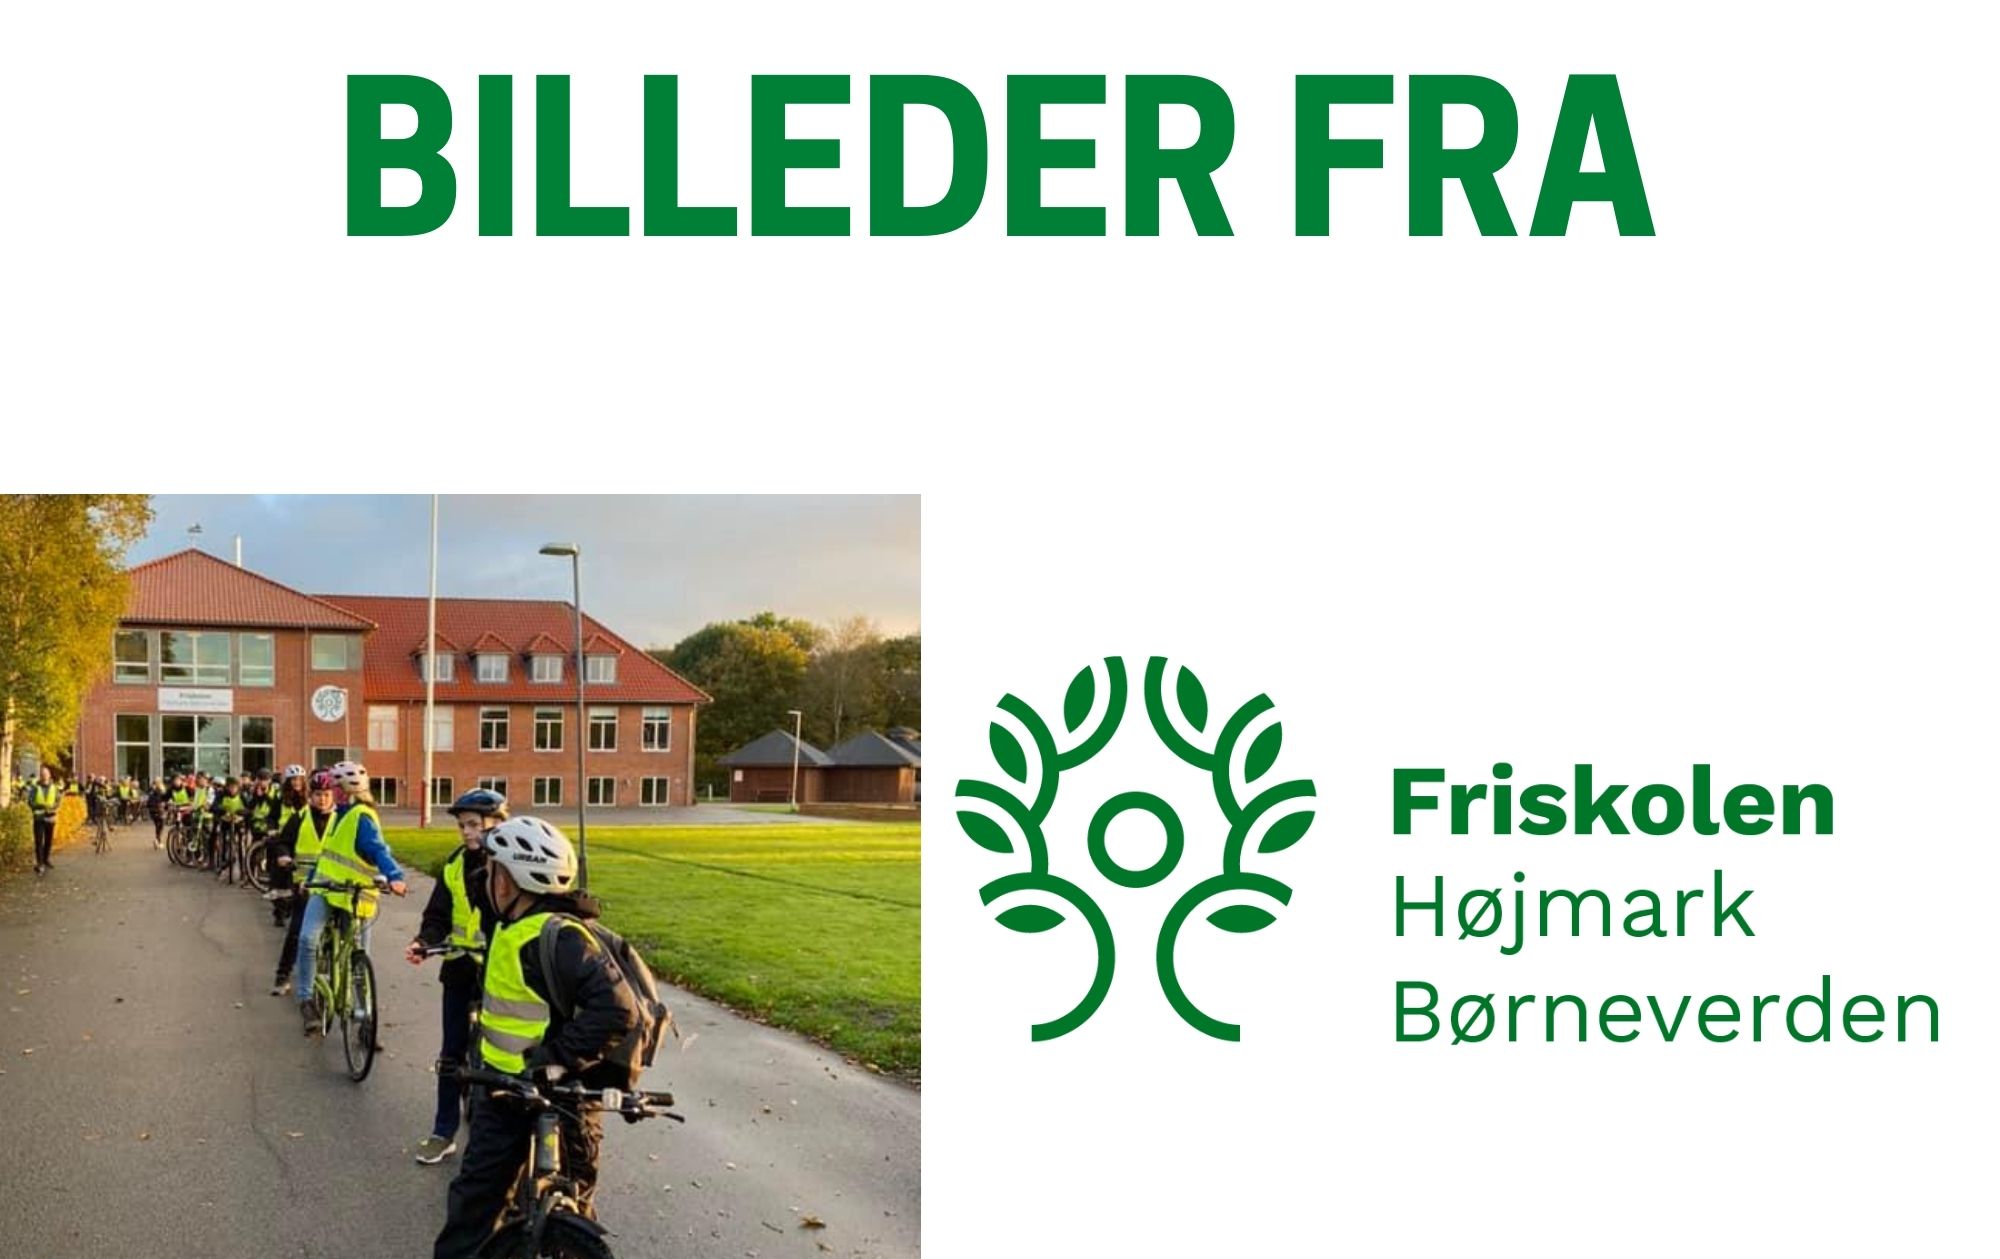 BILLEDER FRA -FRISKOLEN HØJMARK BØRNEVERDEN